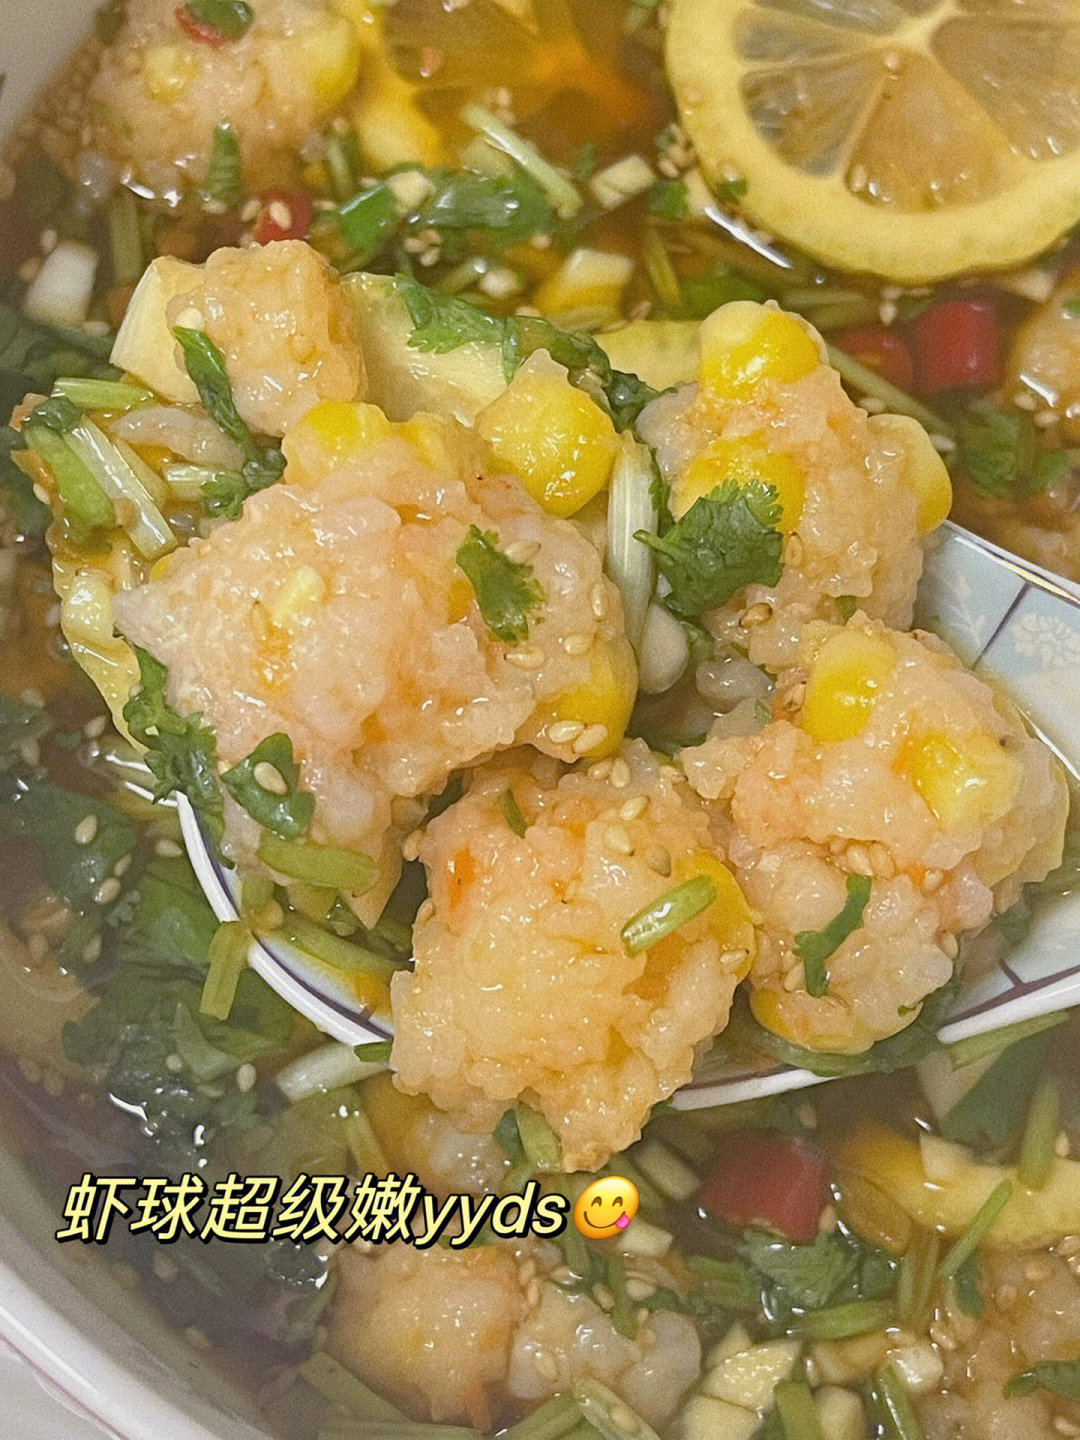 做法:虾滑沸水下锅煮熟捞出倒入酸辣汁里就可以吃啦!